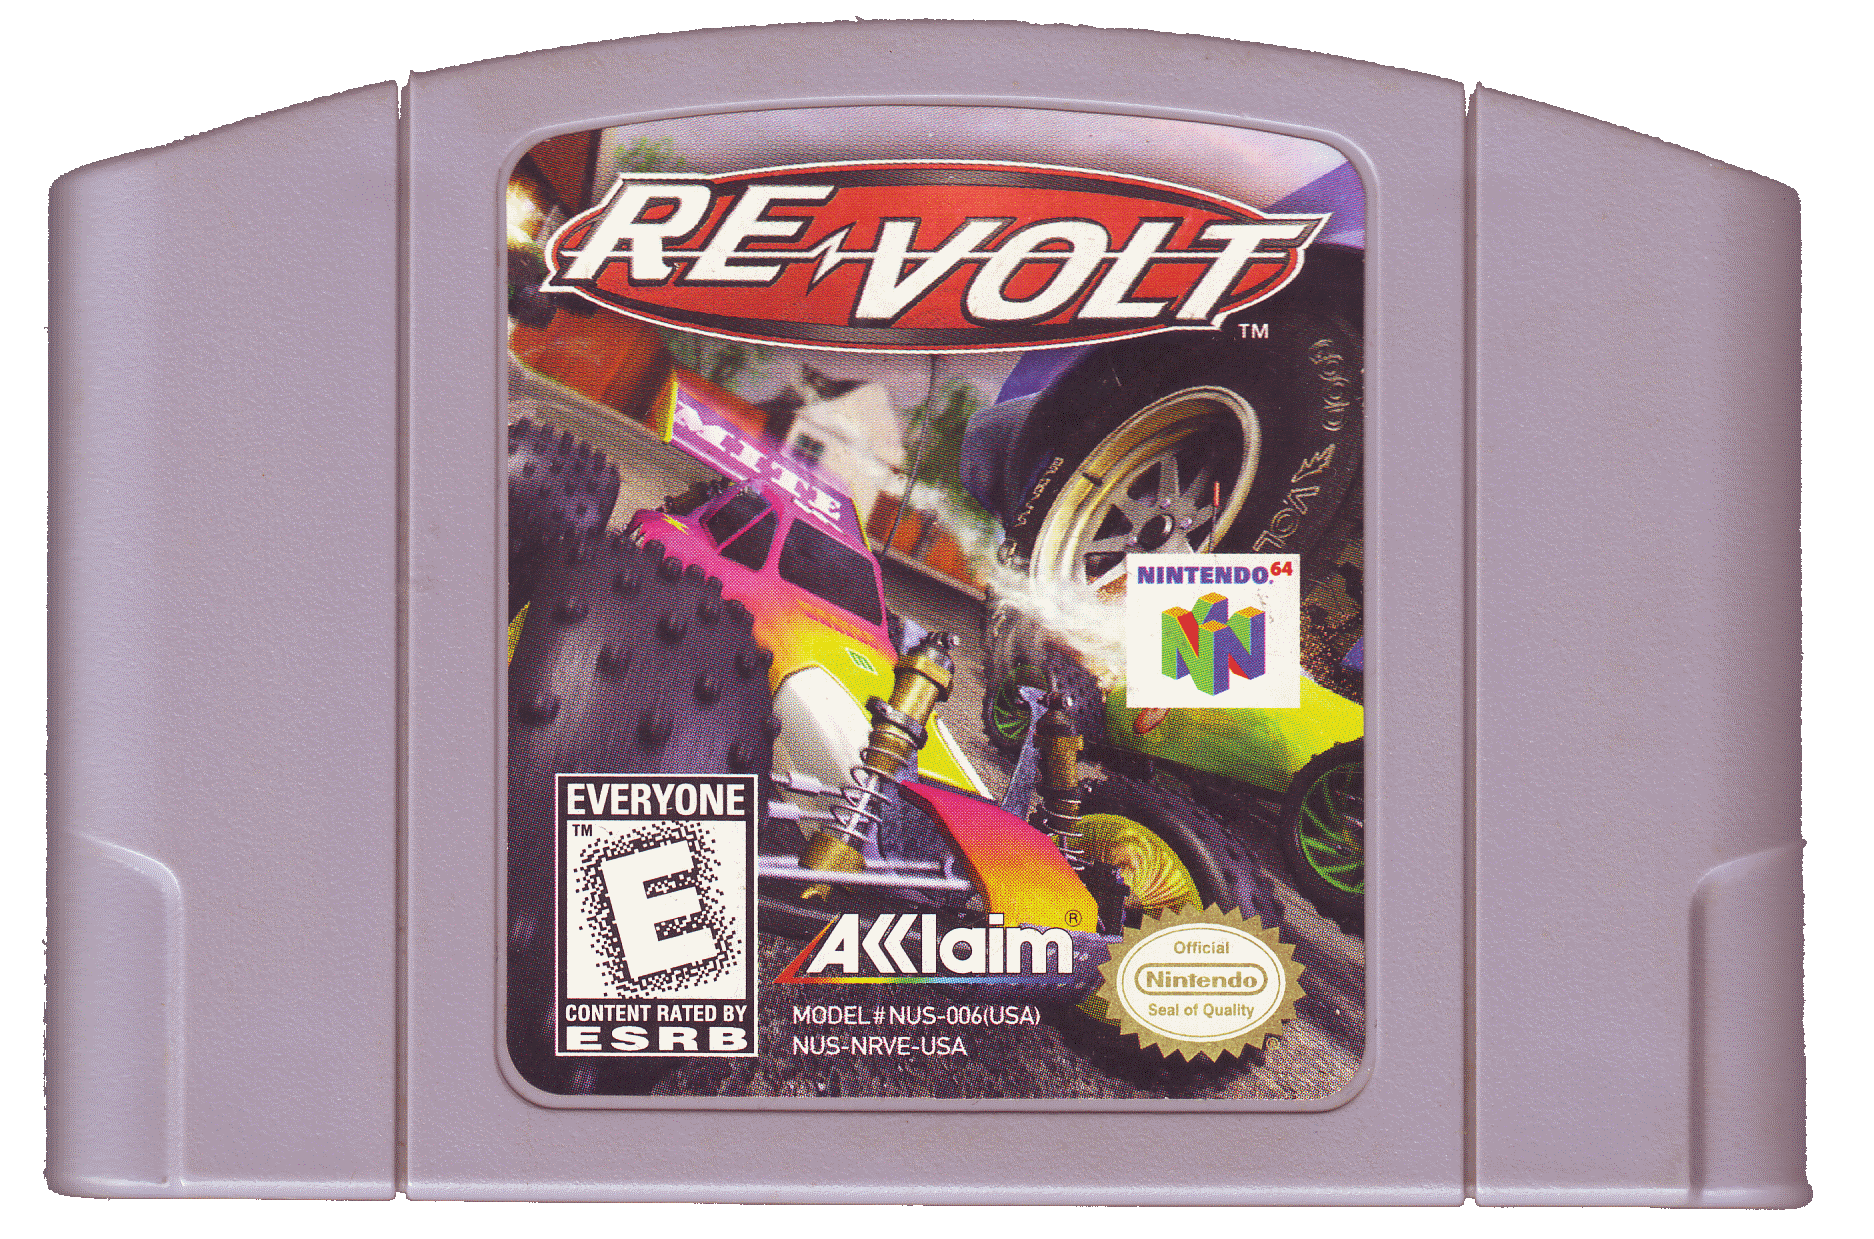 Museum dos Games - Tudo sobre os jogos que marcaram época!: Re-volt  (PC/N64/PSX)